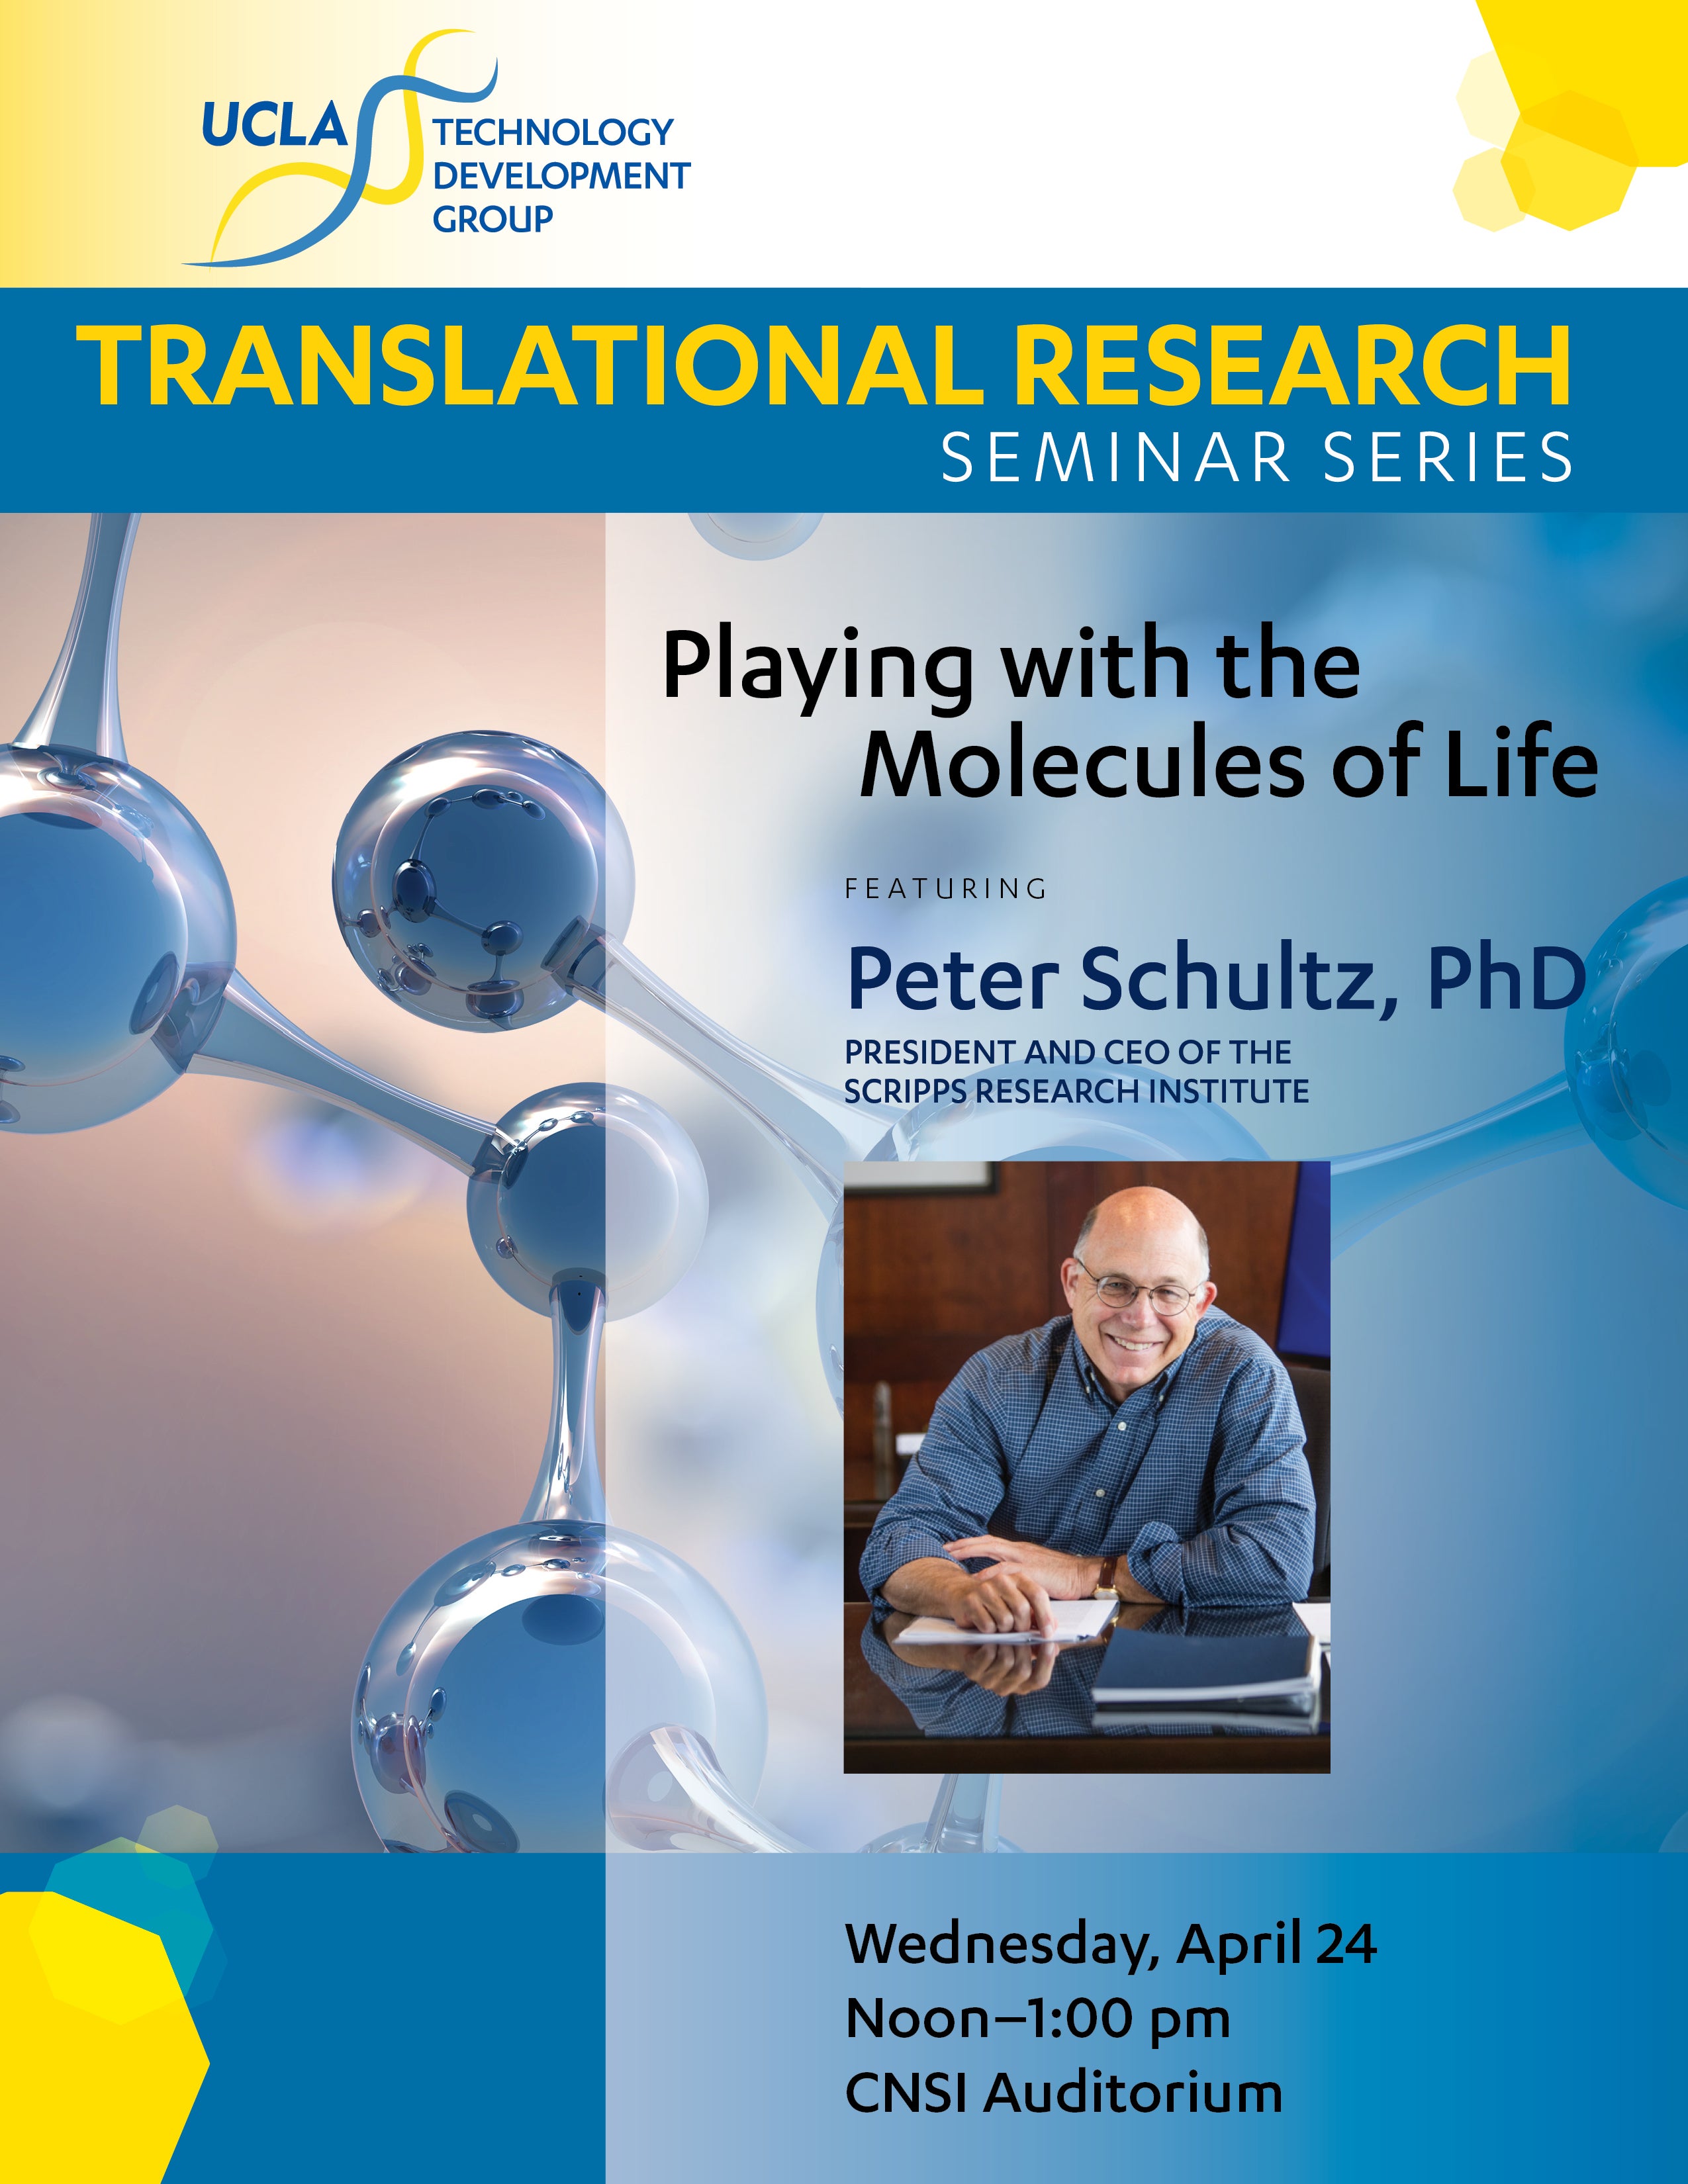 Peter Schultz, PhD, The Scripps Research Institute